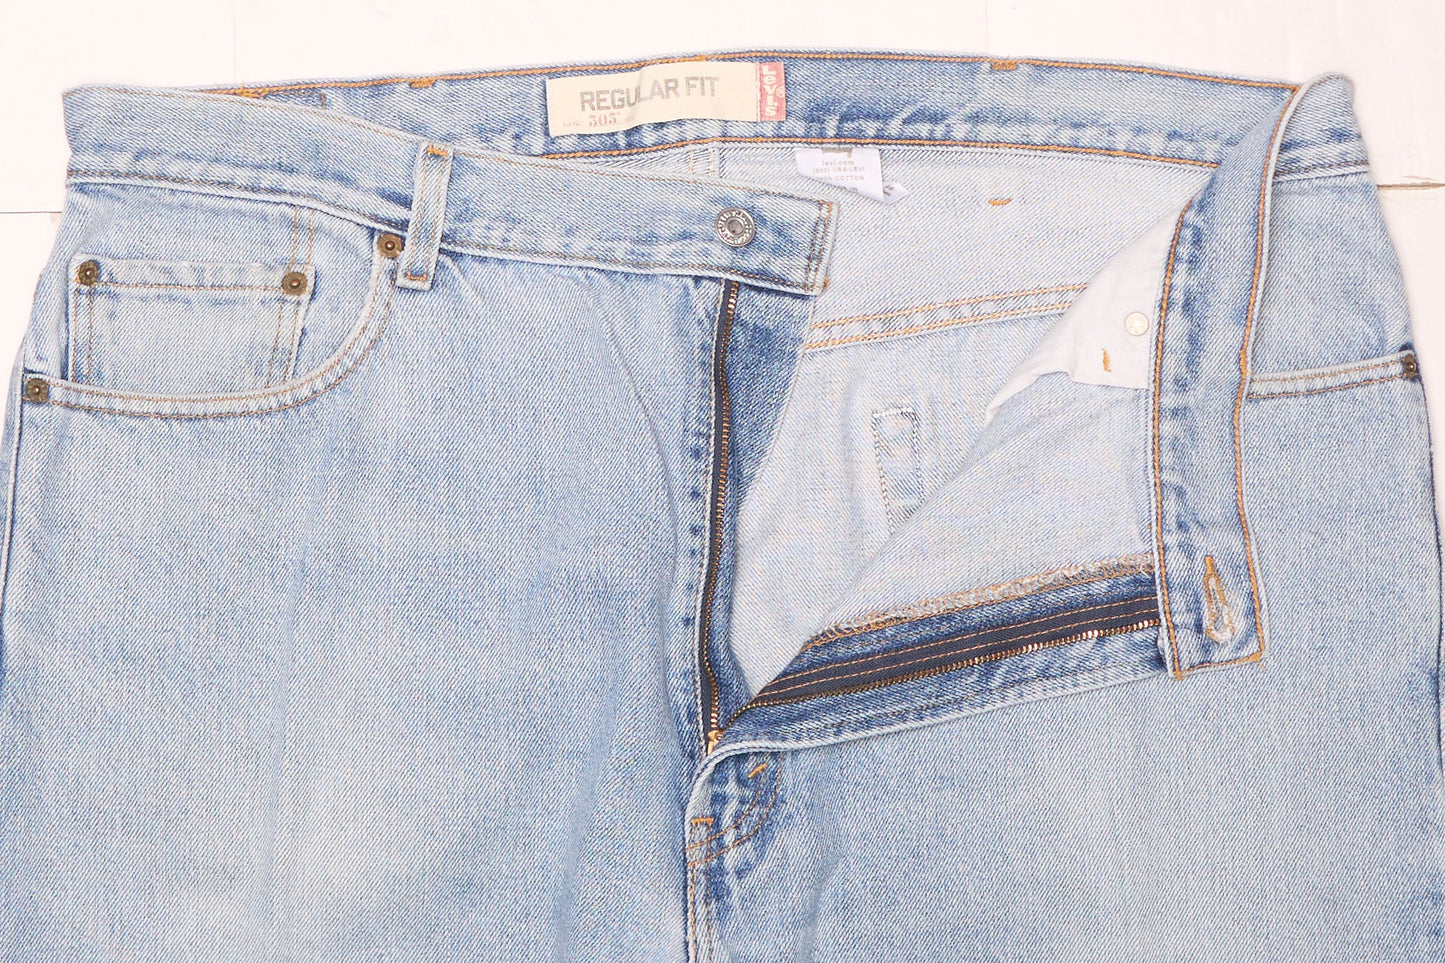 Jeans Levis de corte recto con cremallera - Ancho 42" Largo 32"